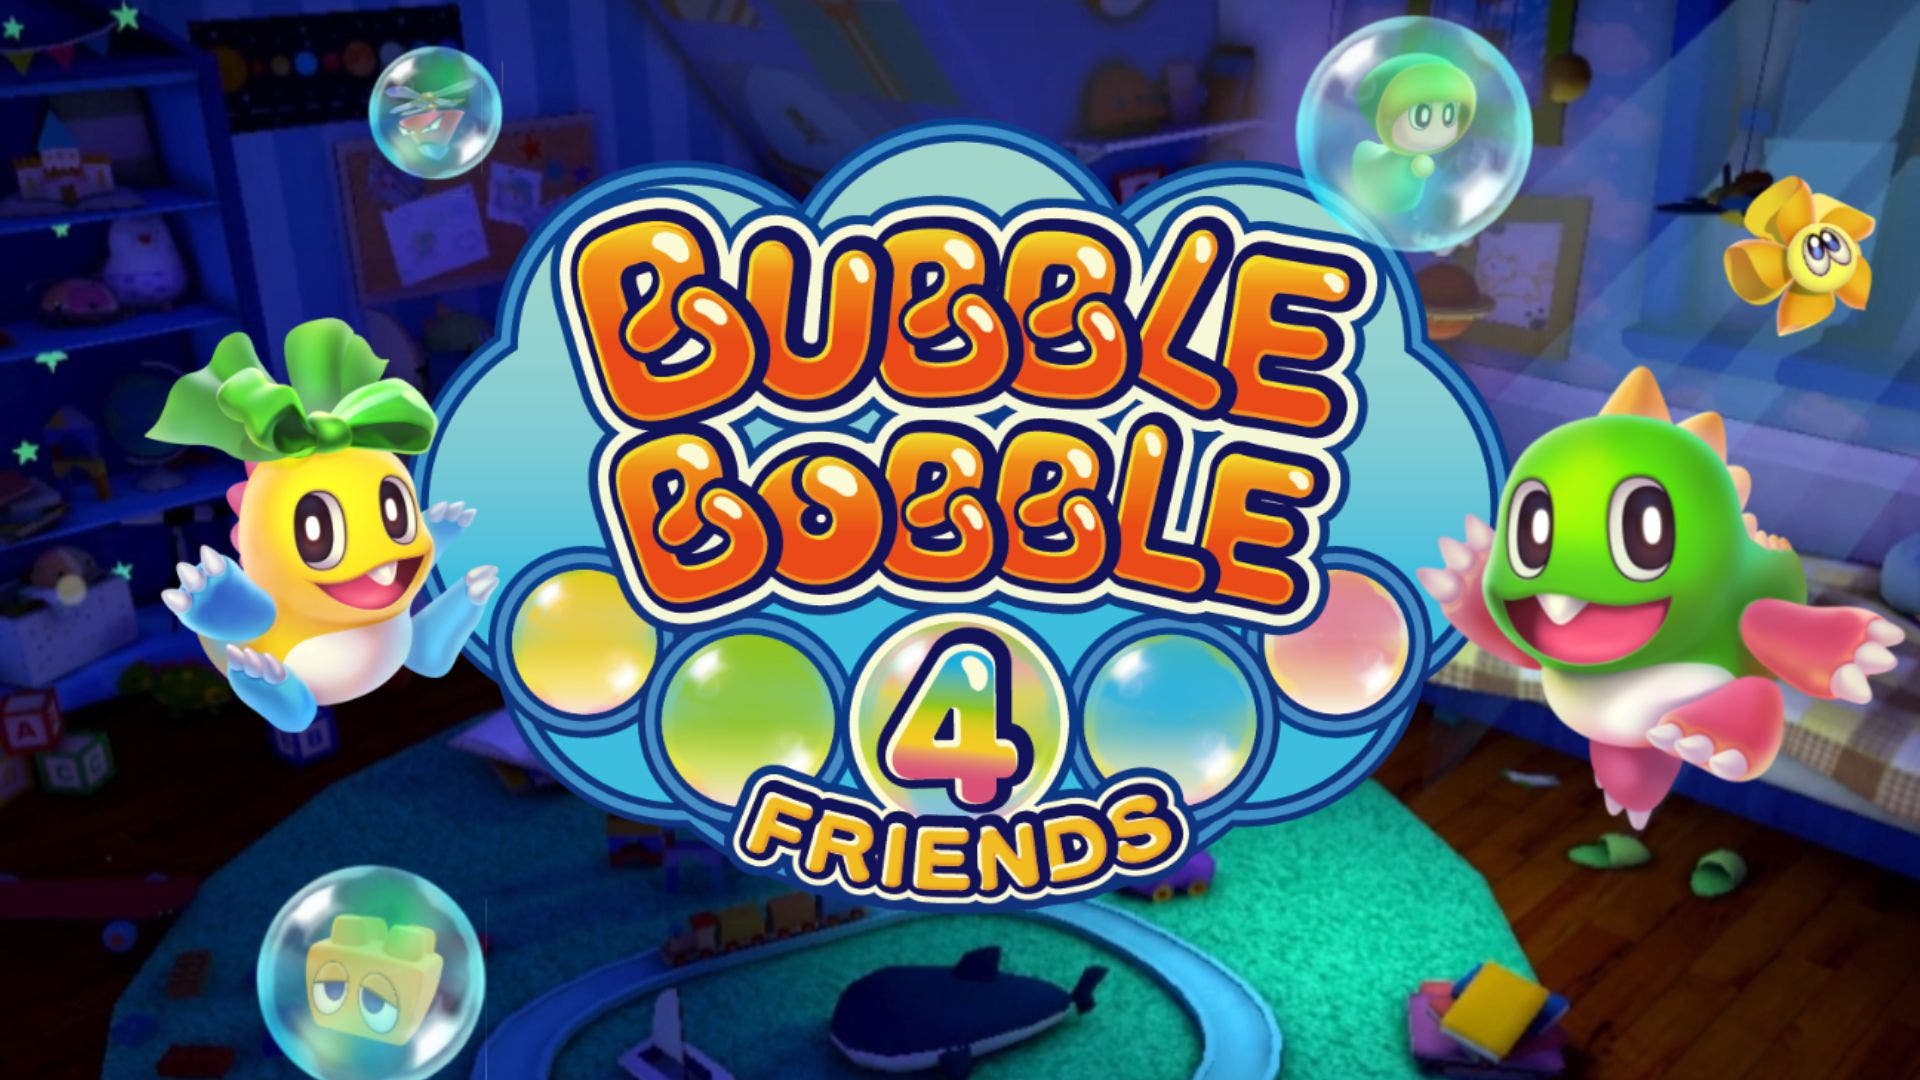 El programa japonés Denjin Getcha muestra unas partidas de Bubble Bobble 4 Friends de Nintendo Switch